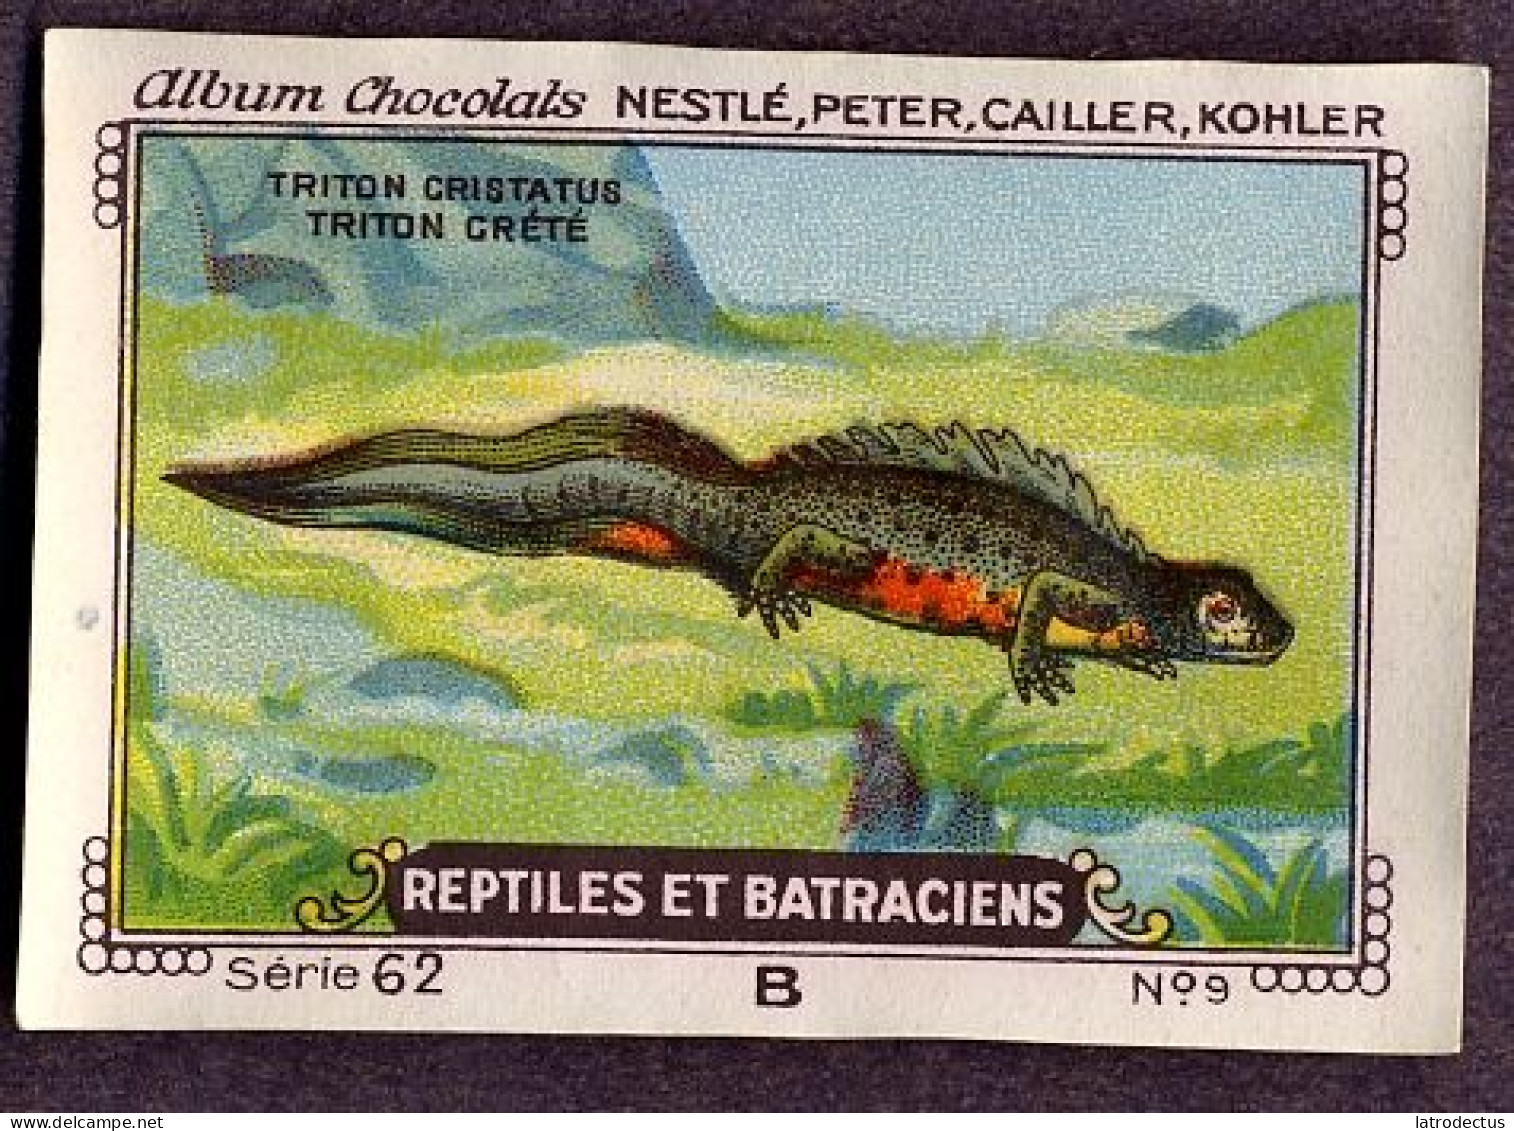 Nestlé - 62B - Reptiles Et Batraciens, Reptiles And Amphibians - 9 - Triton Crêté, Northern Crested Newt, Salamander - Nestlé